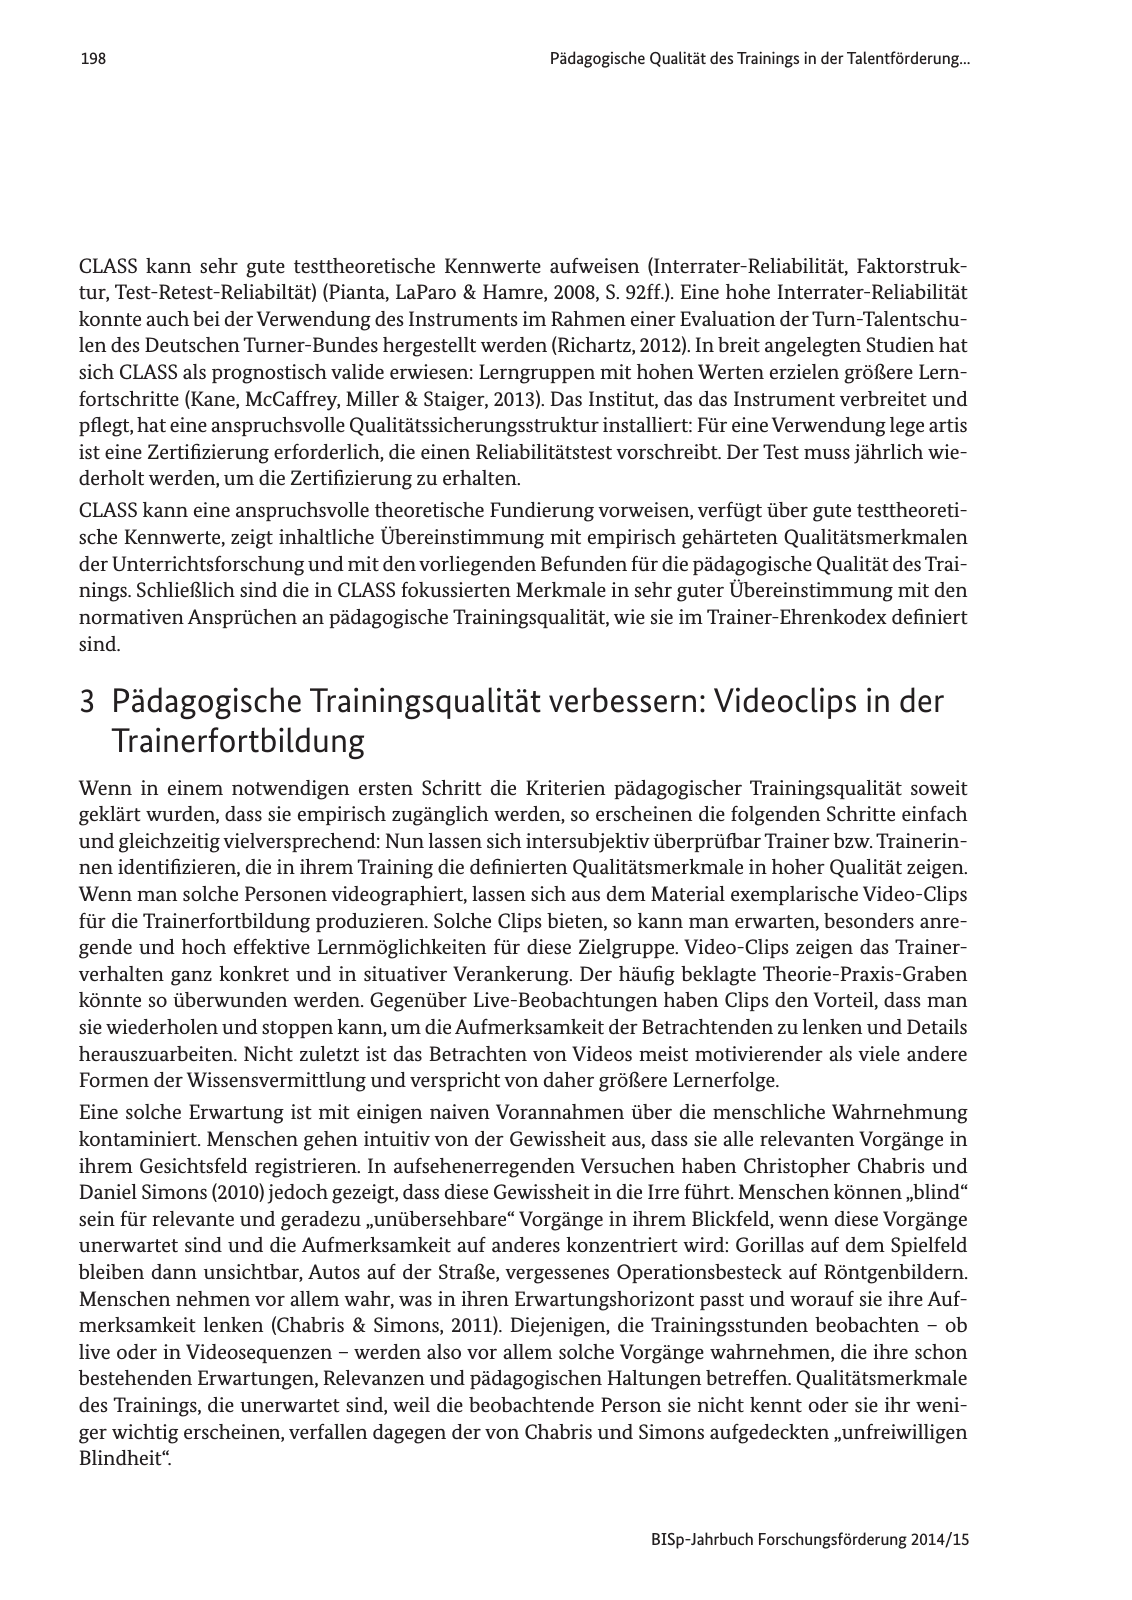 Vorschau Jahrbuch 2014/15 Seite 199